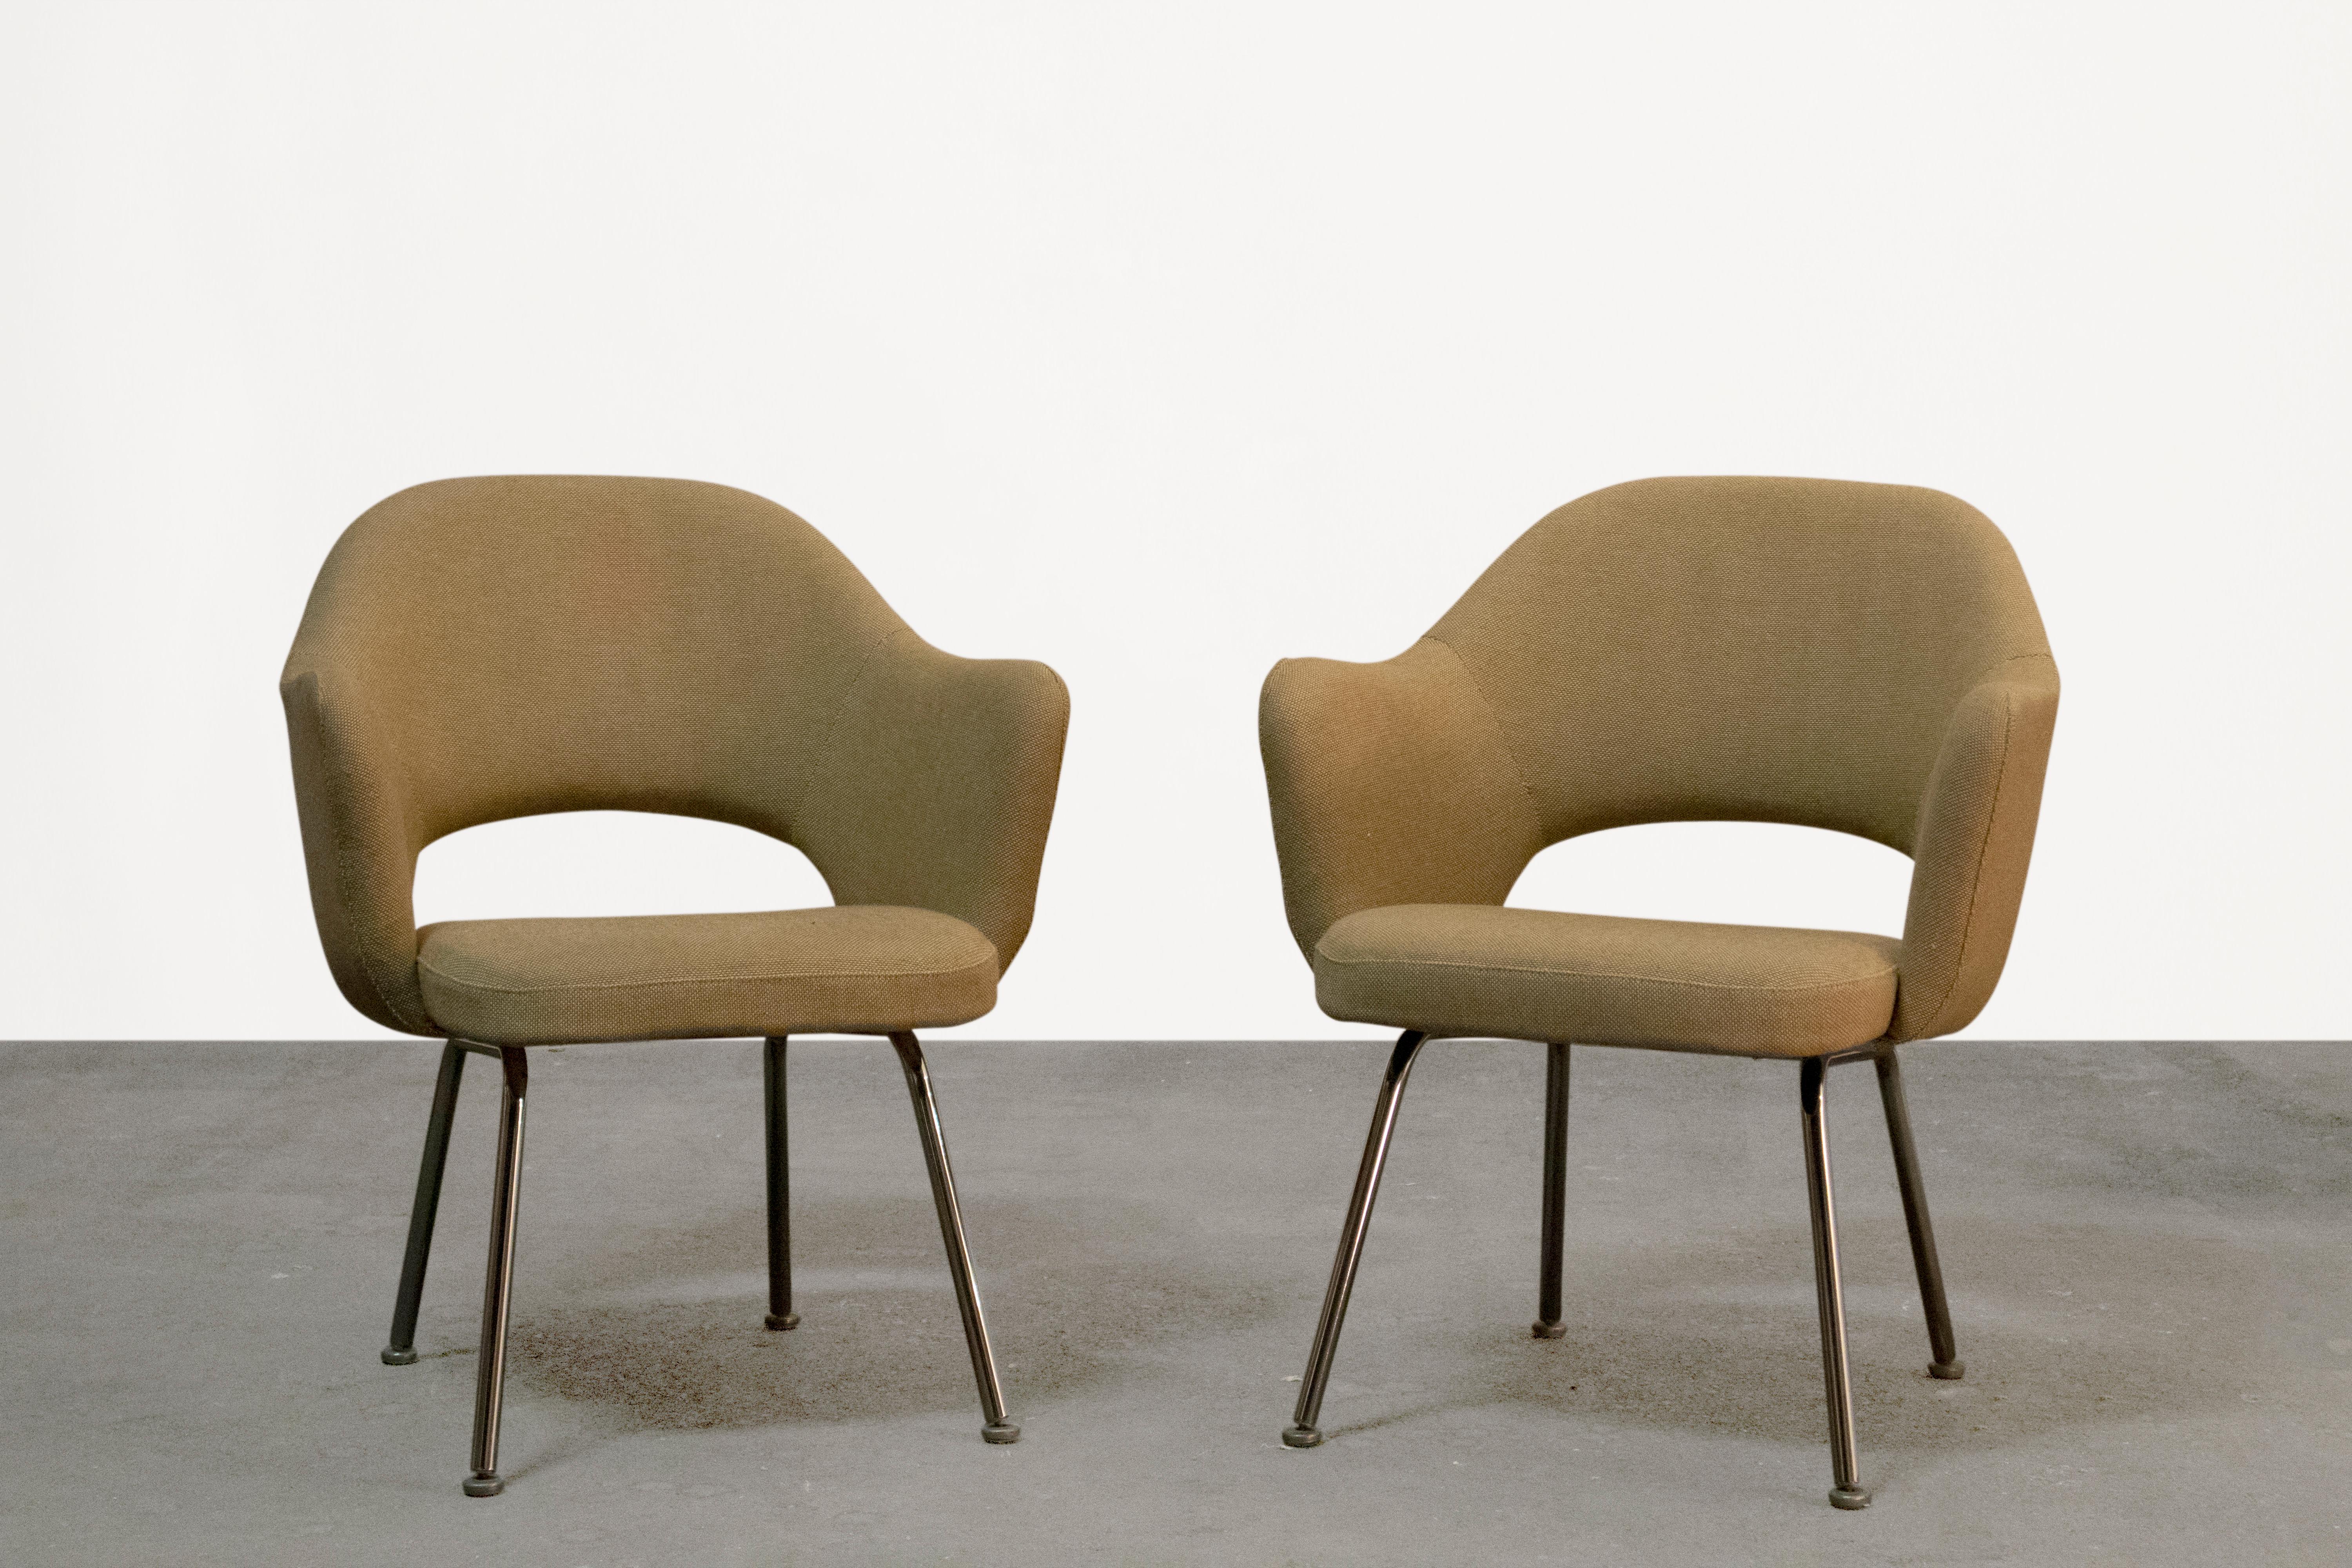 Verschönern Sie Ihren Raum mit diesem zeitlosen Paar organisch-moderner Chefsessel aus der Mitte des Jahrhunderts von dem berühmten Designer Eero Saarinen für Knoll. Diese kultigen Stühle haben ein klassisches 4-Fuß-Gestell aus verchromtem Stahlrohr